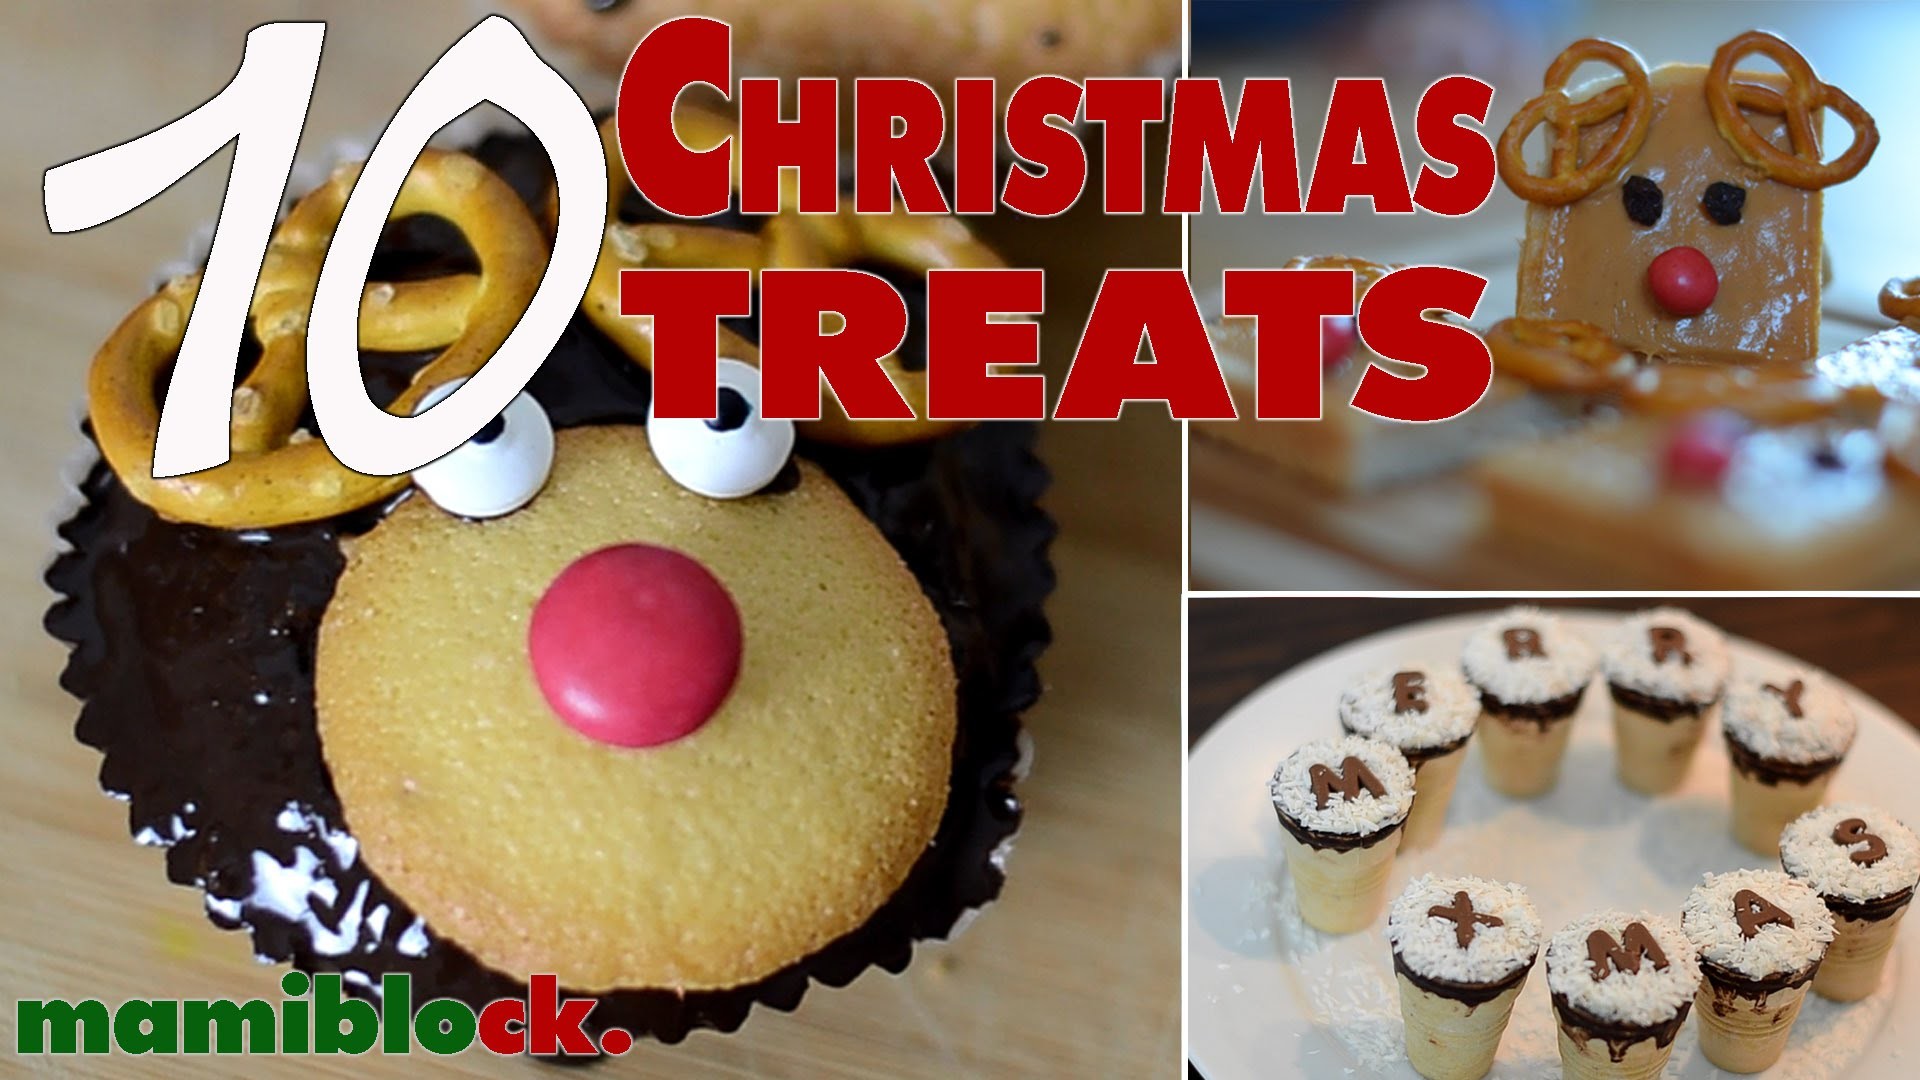 In der Weihnachtsbäckerei | Christmas Treats | DIY | mamiblock kiDchen